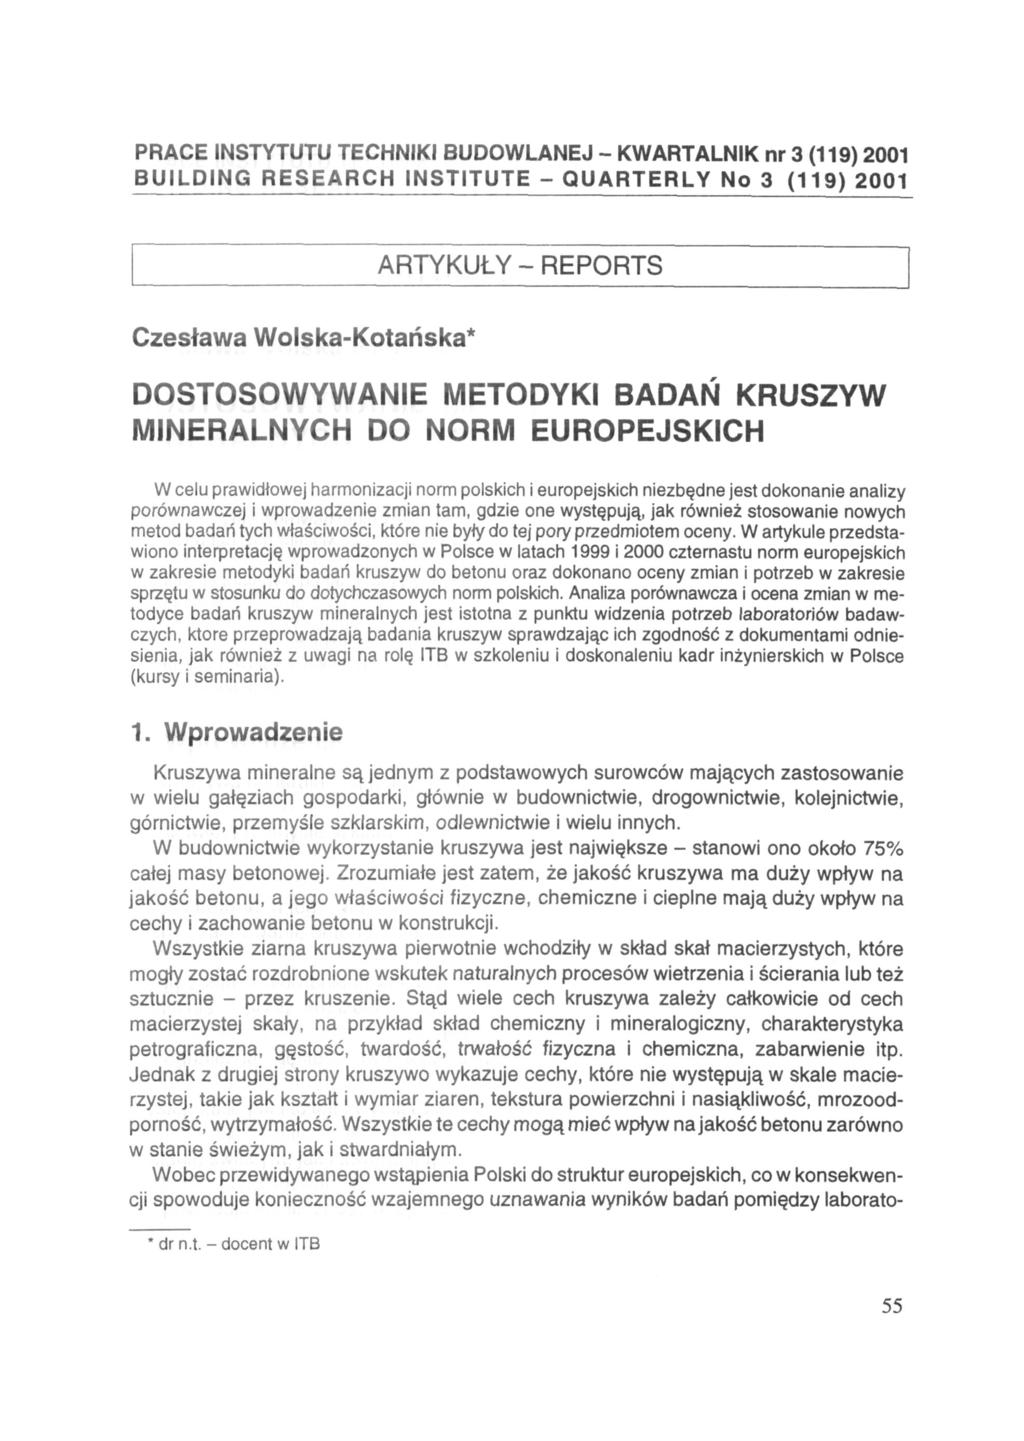 PRACE INSTYTUTU TECHNIKI BUDOWLANEJ - KWARTALNIK nr 3 (119) 2001 BUILDING RESEARCH INSTITUTE - QUARTERLY No 3 (119) 2001 ARTYKUŁY - REPORTS Czesława Wolska-Kotańska* DOSTOSOWYWANIE METODYKI BADAŃ